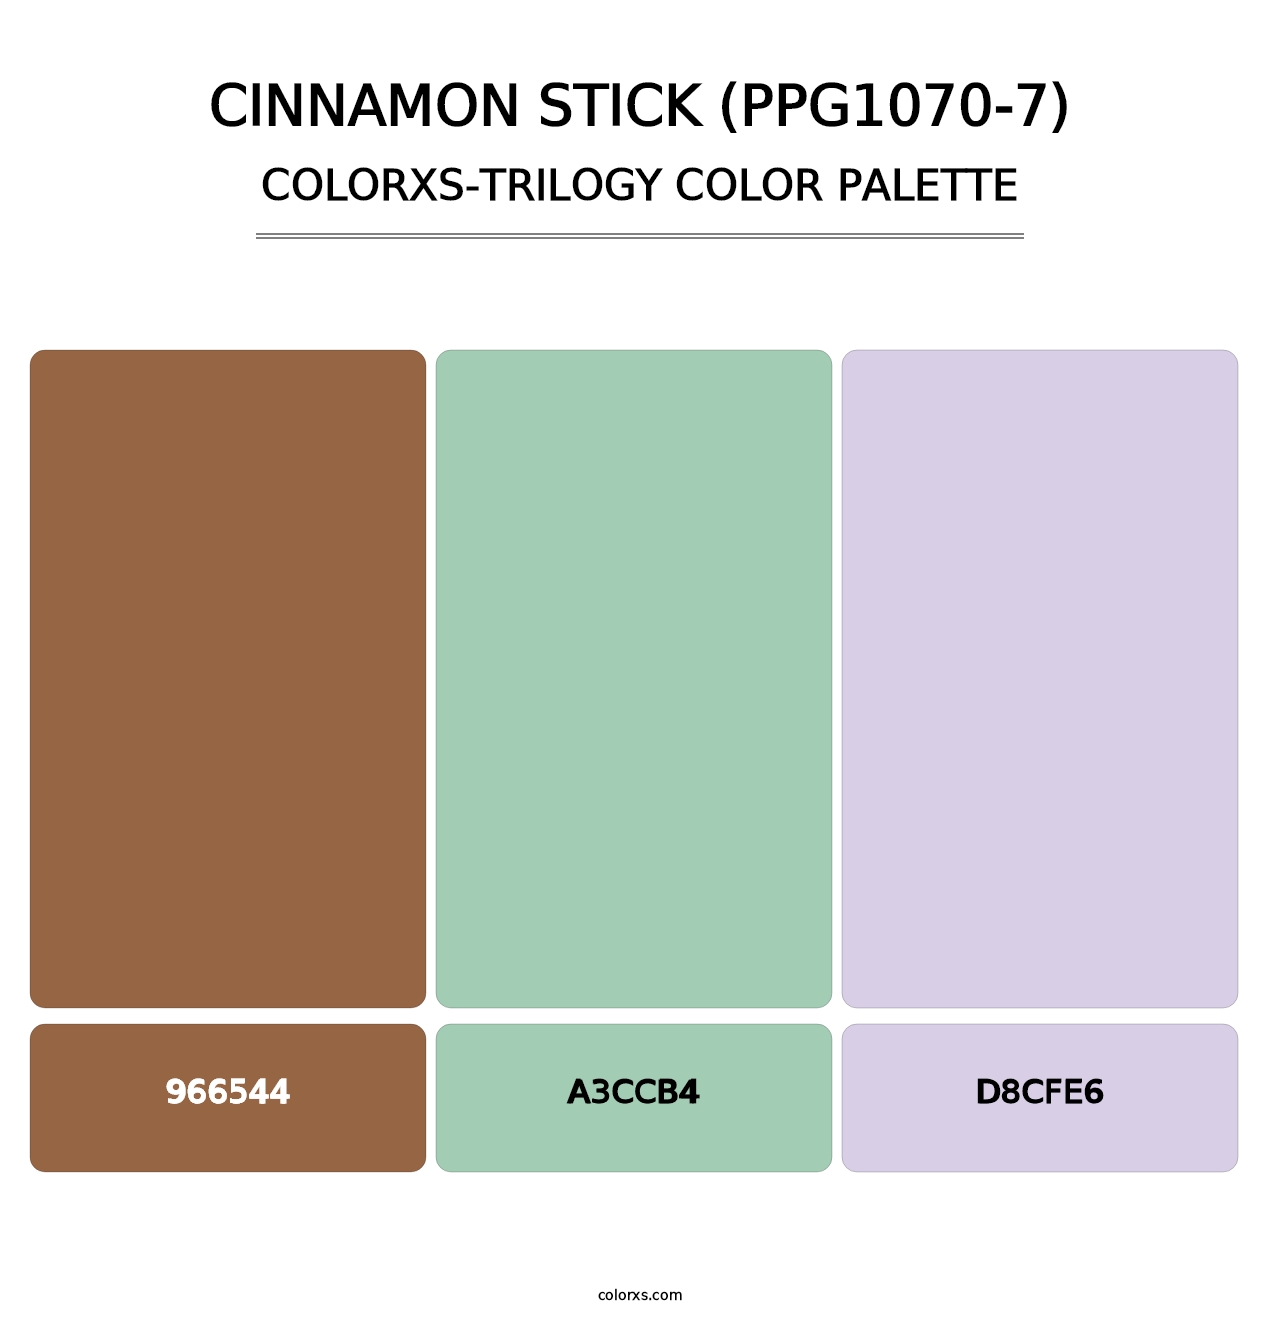 Cinnamon Stick (PPG1070-7) - Colorxs Trilogy Palette